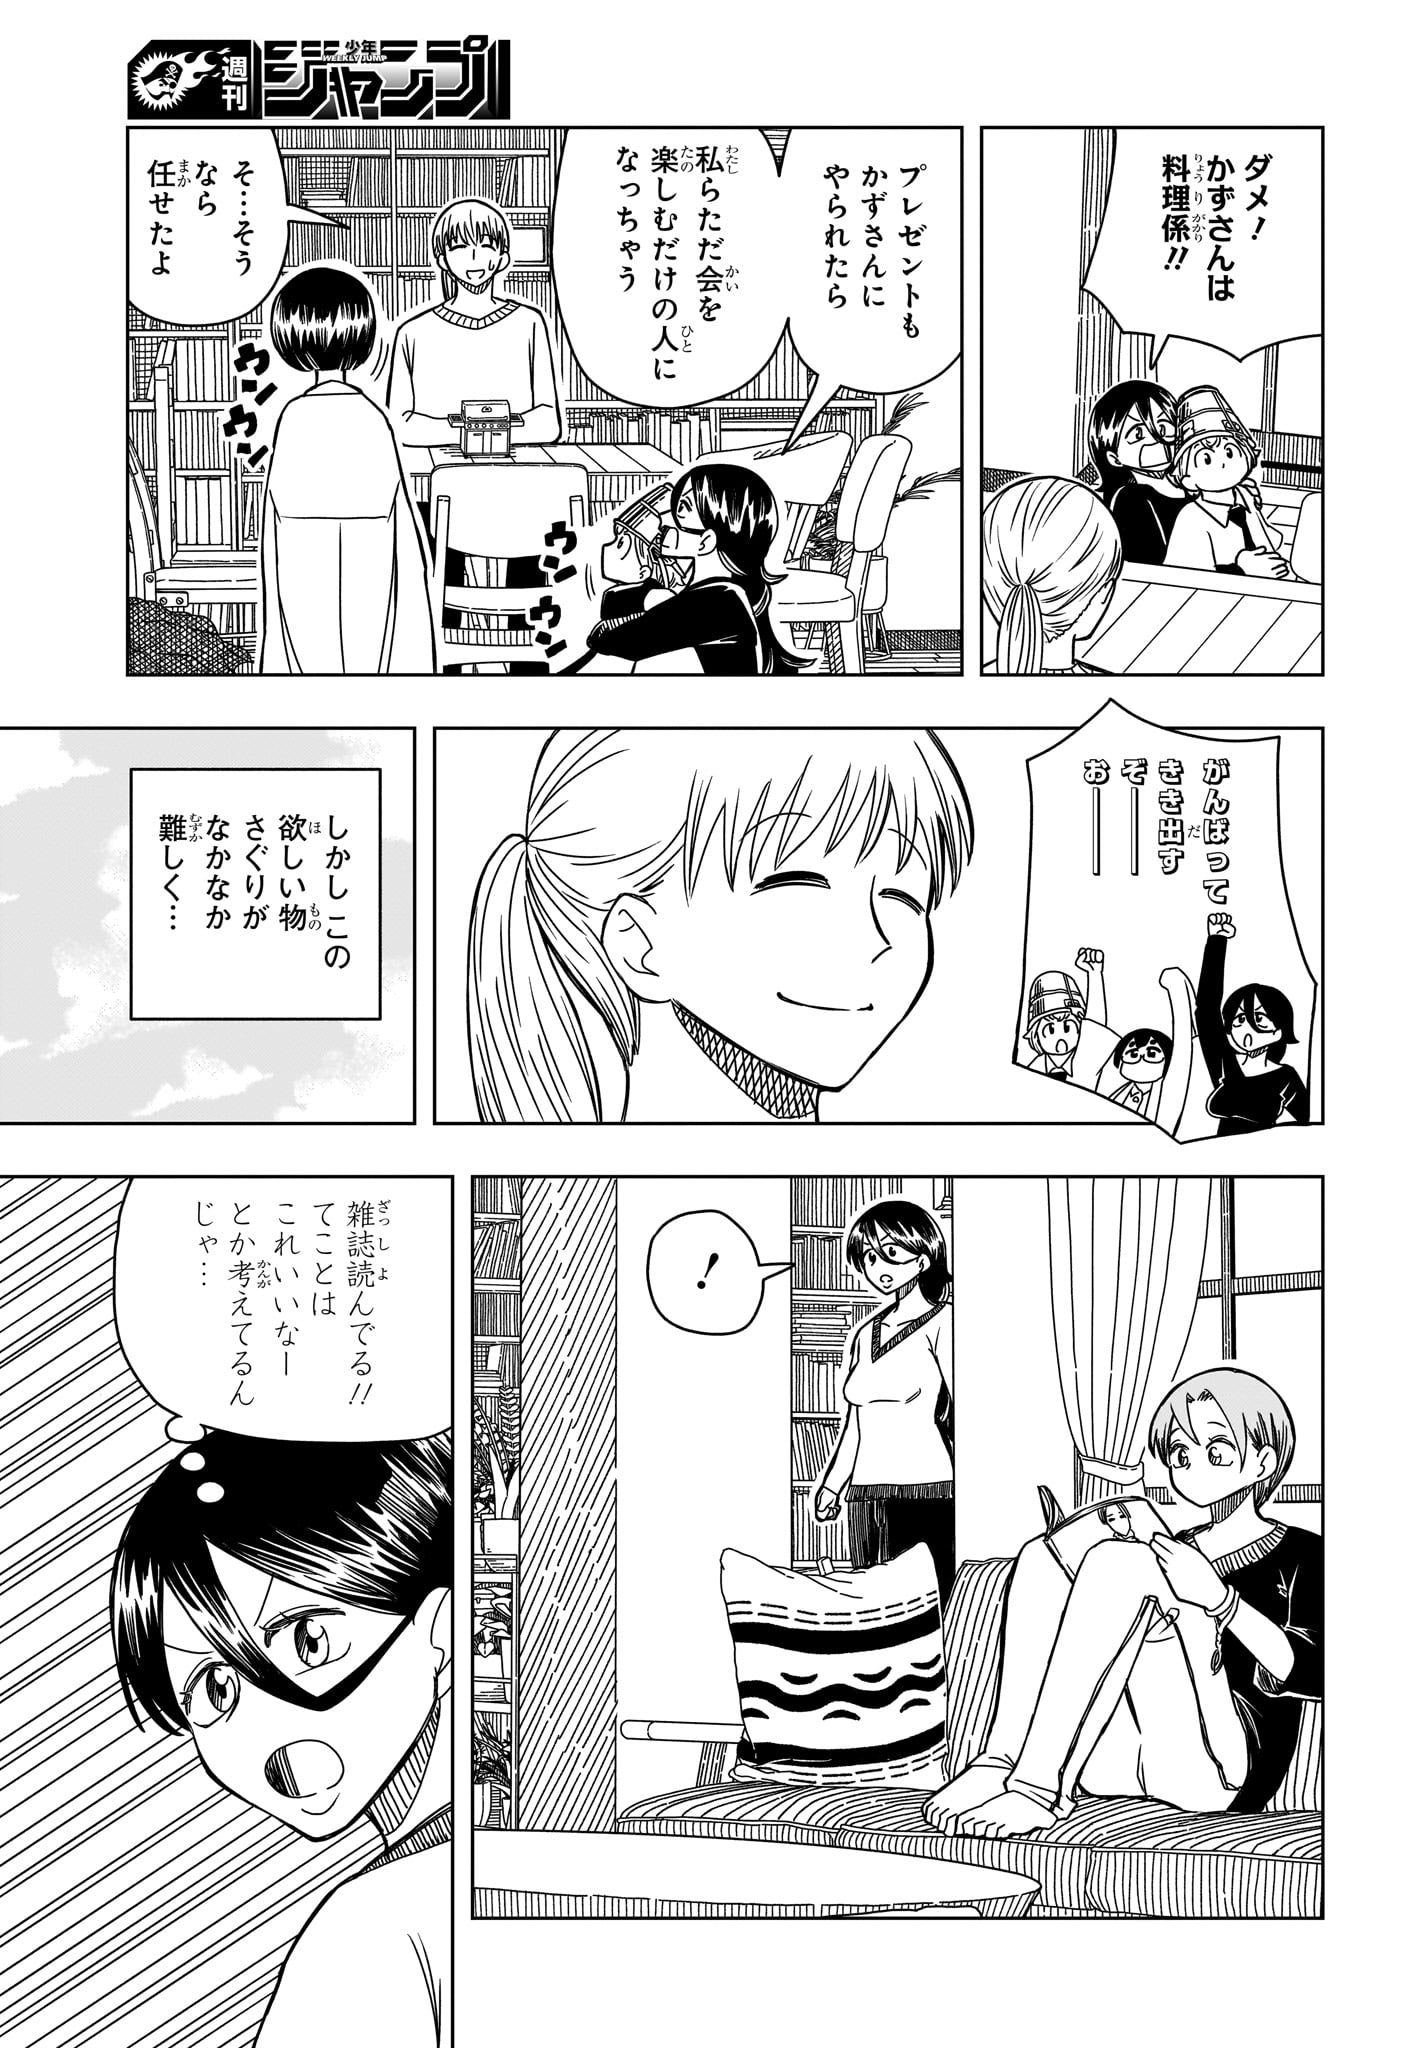 Saikuru Biyori - Chapter 6 - Page 7